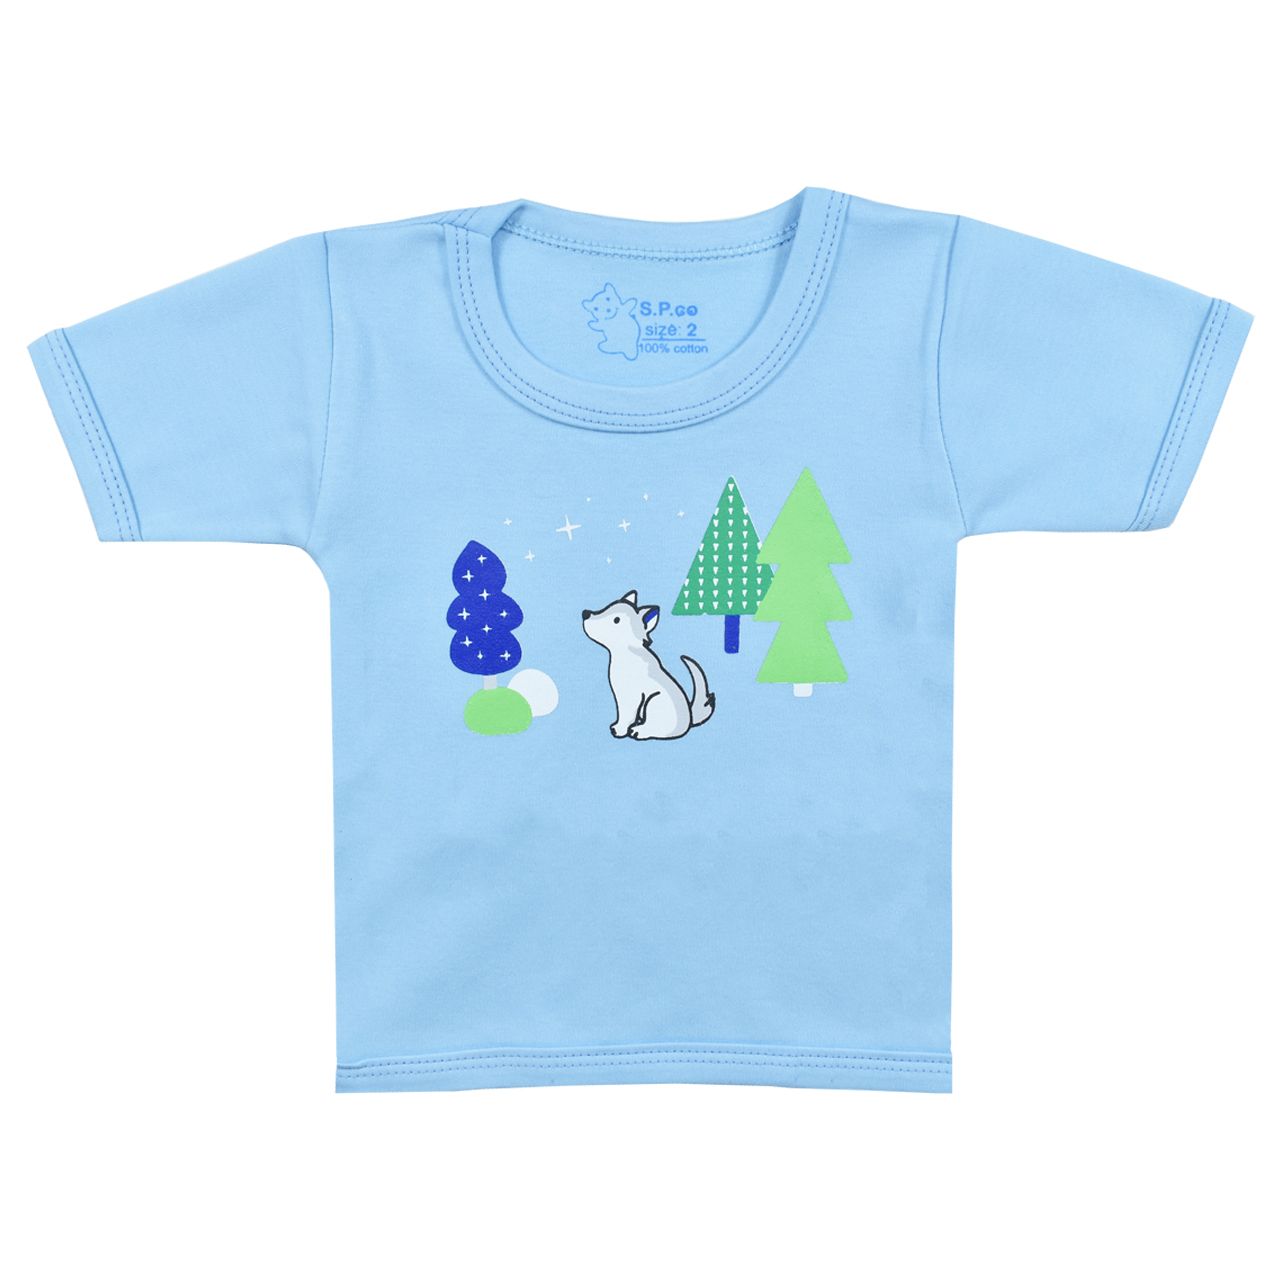 تی شرت آستین کوتاه نوزادی اسپیکو کد 301 -4 بسته دو عددی -  - 6